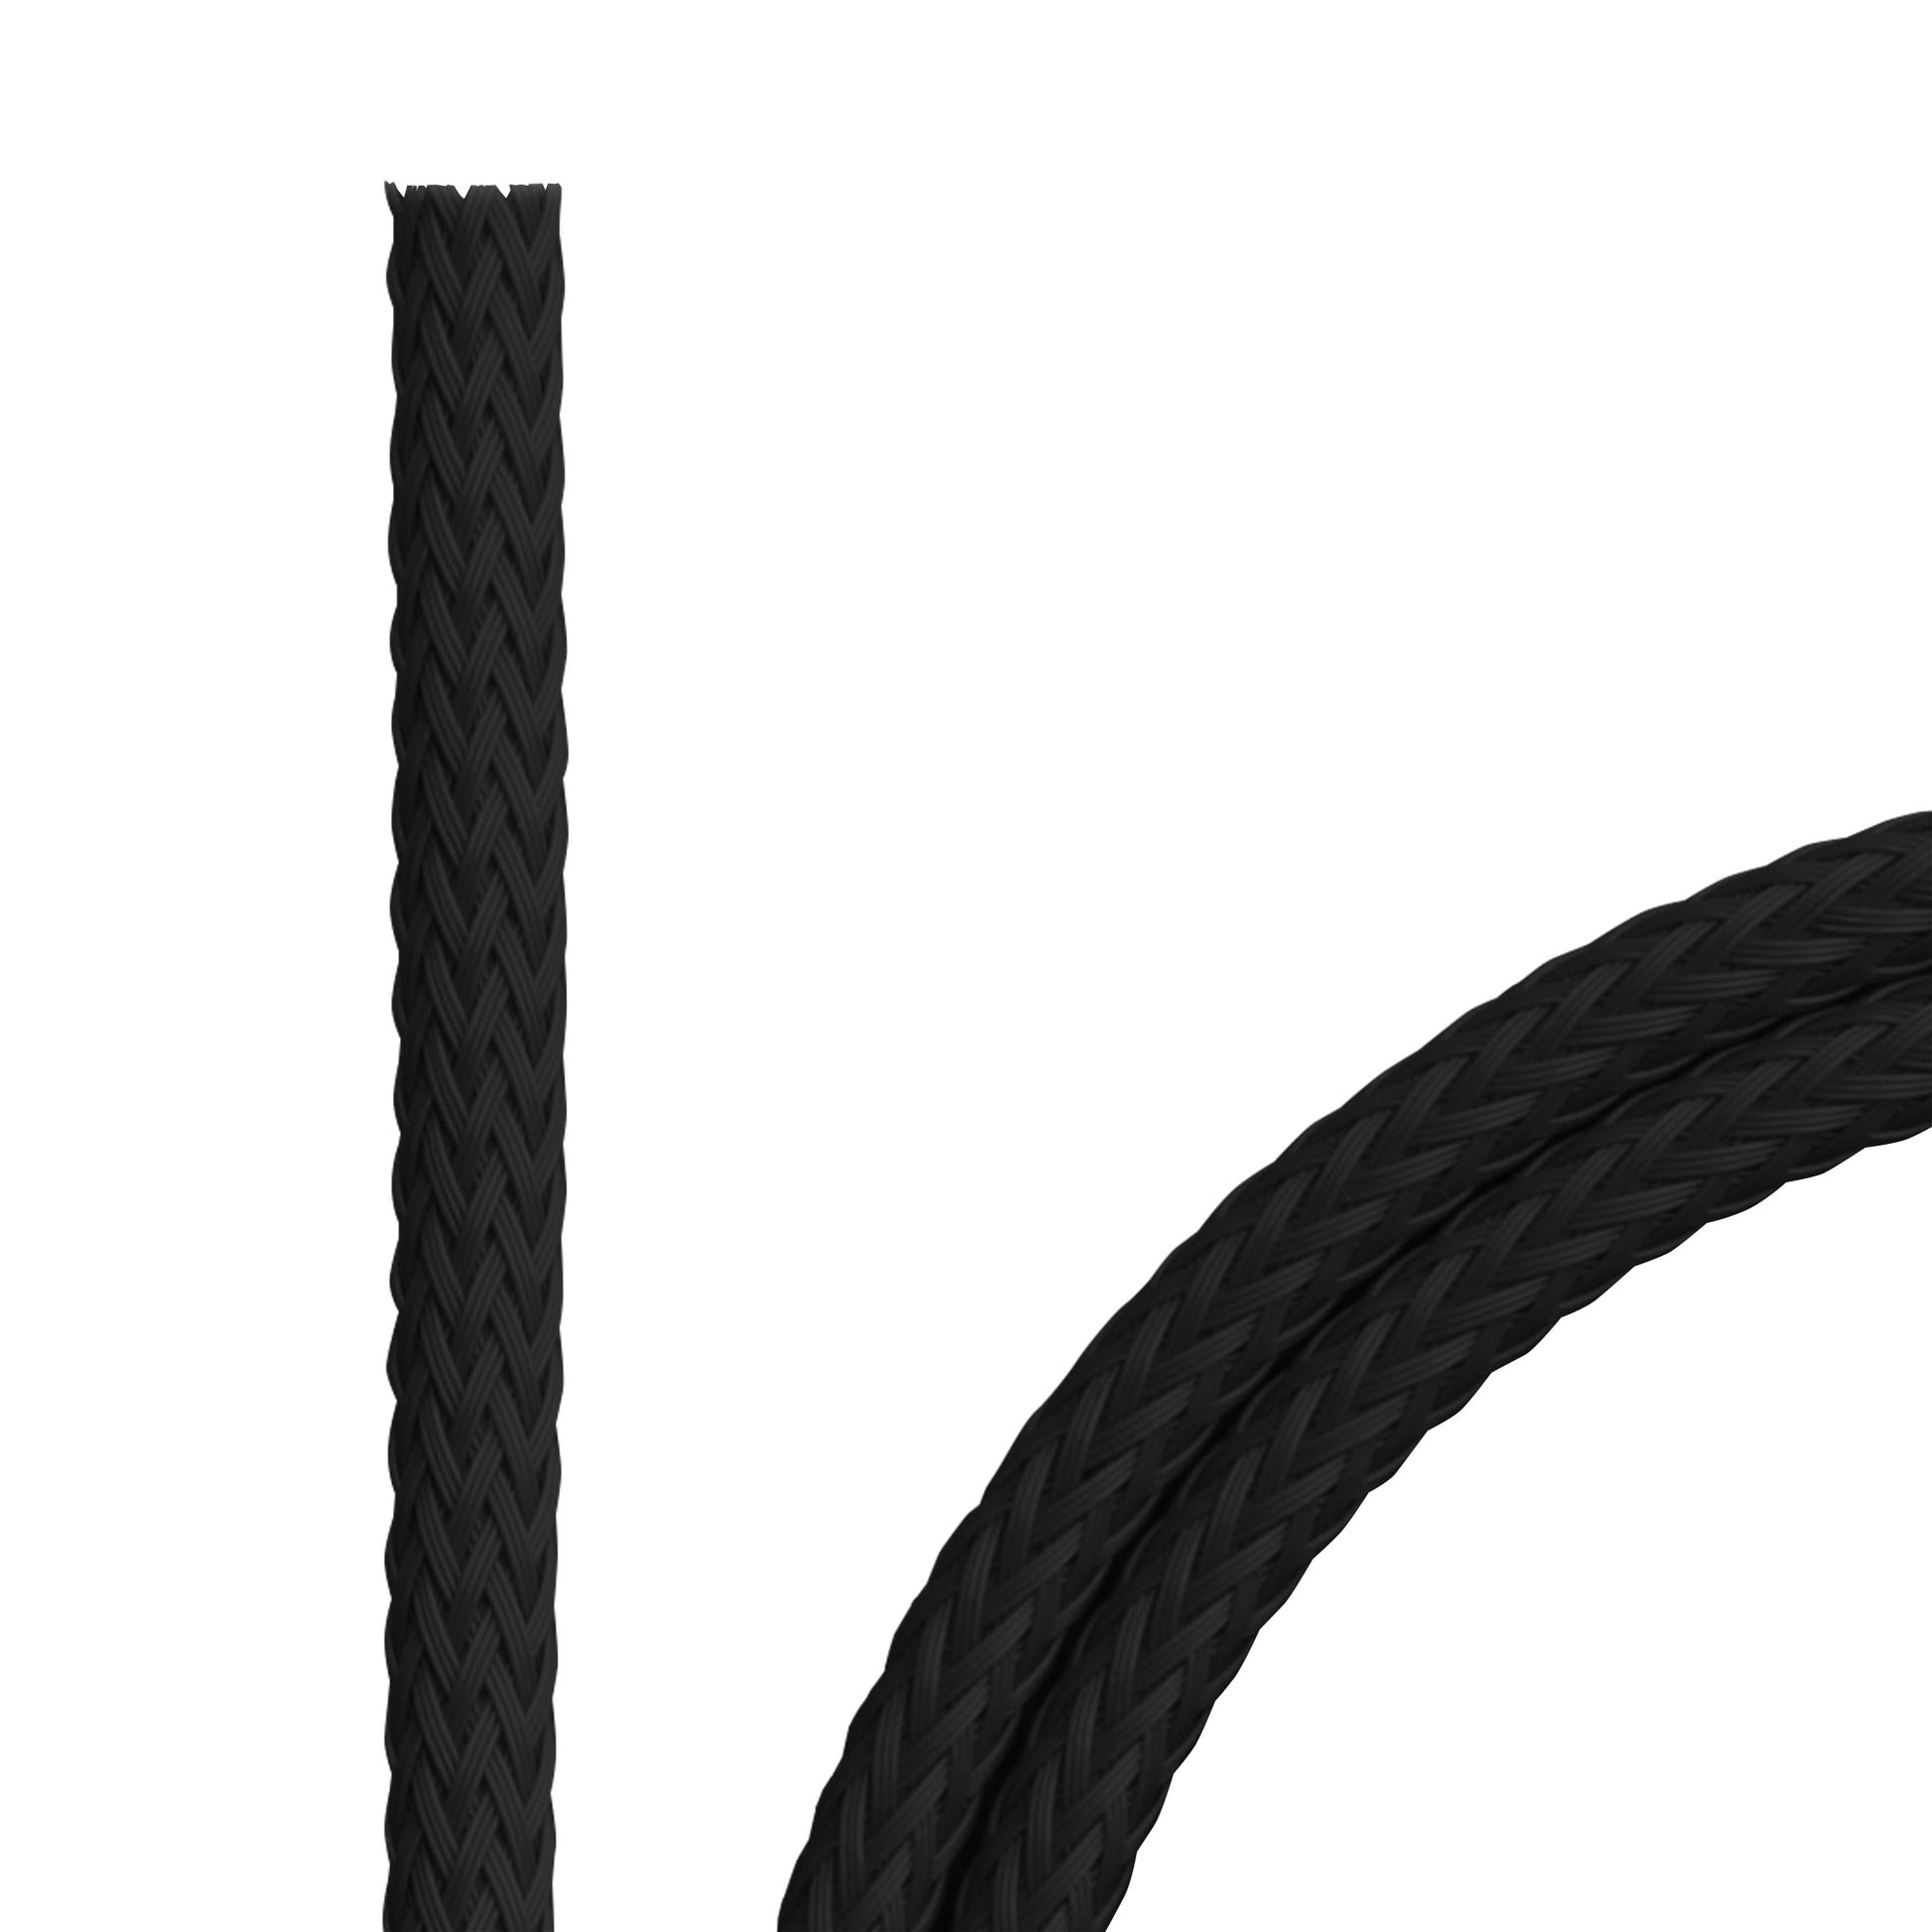 PET-Flechtschlauch in schwarz, geeignet für USB-Kabel